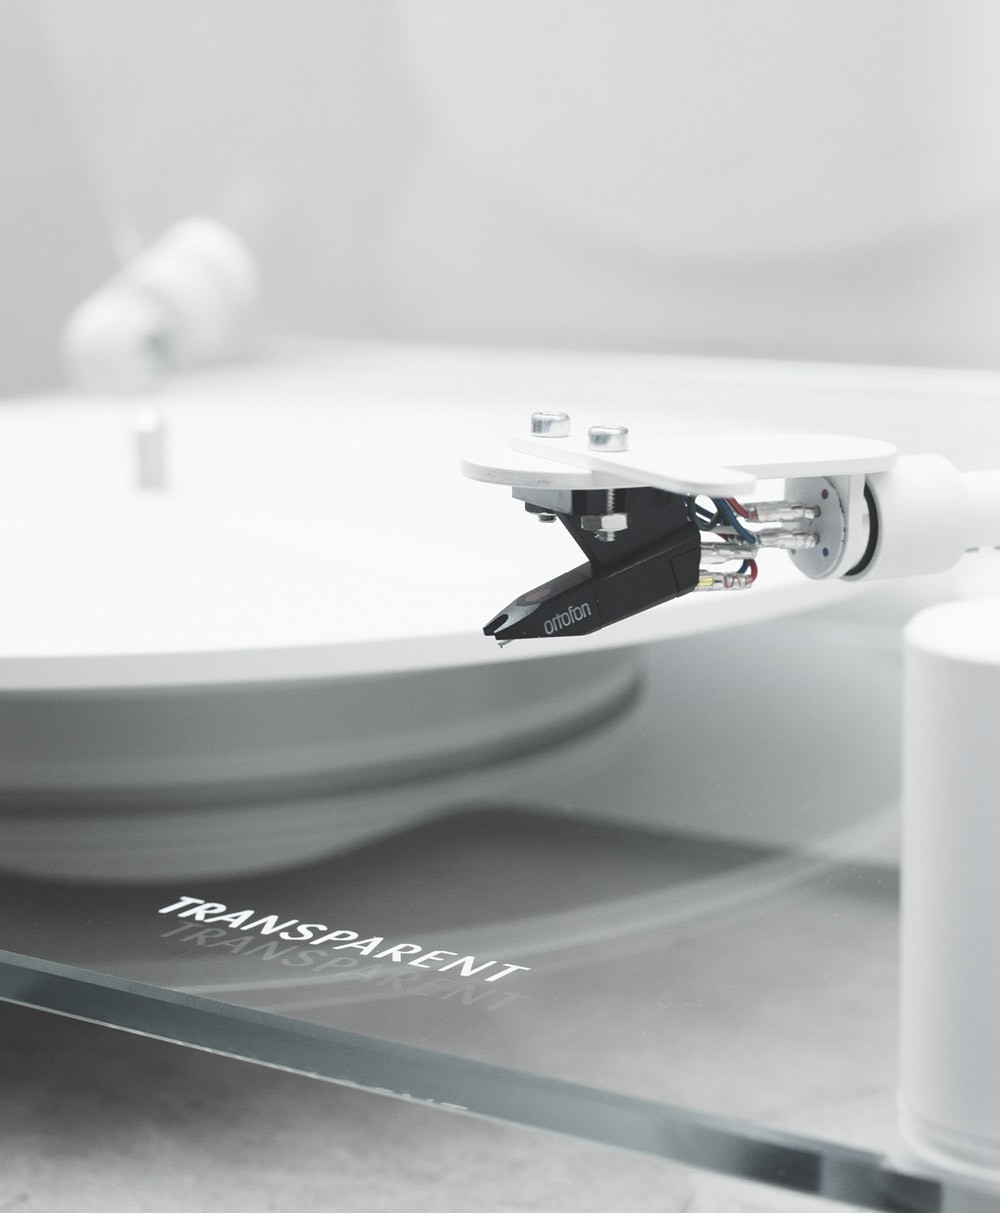 Hier ist ein Moodbild des Transparent Turntables in der Farbe White von der Marke Transparent Sound zu sehen – im Onlineshop RAUM concept store